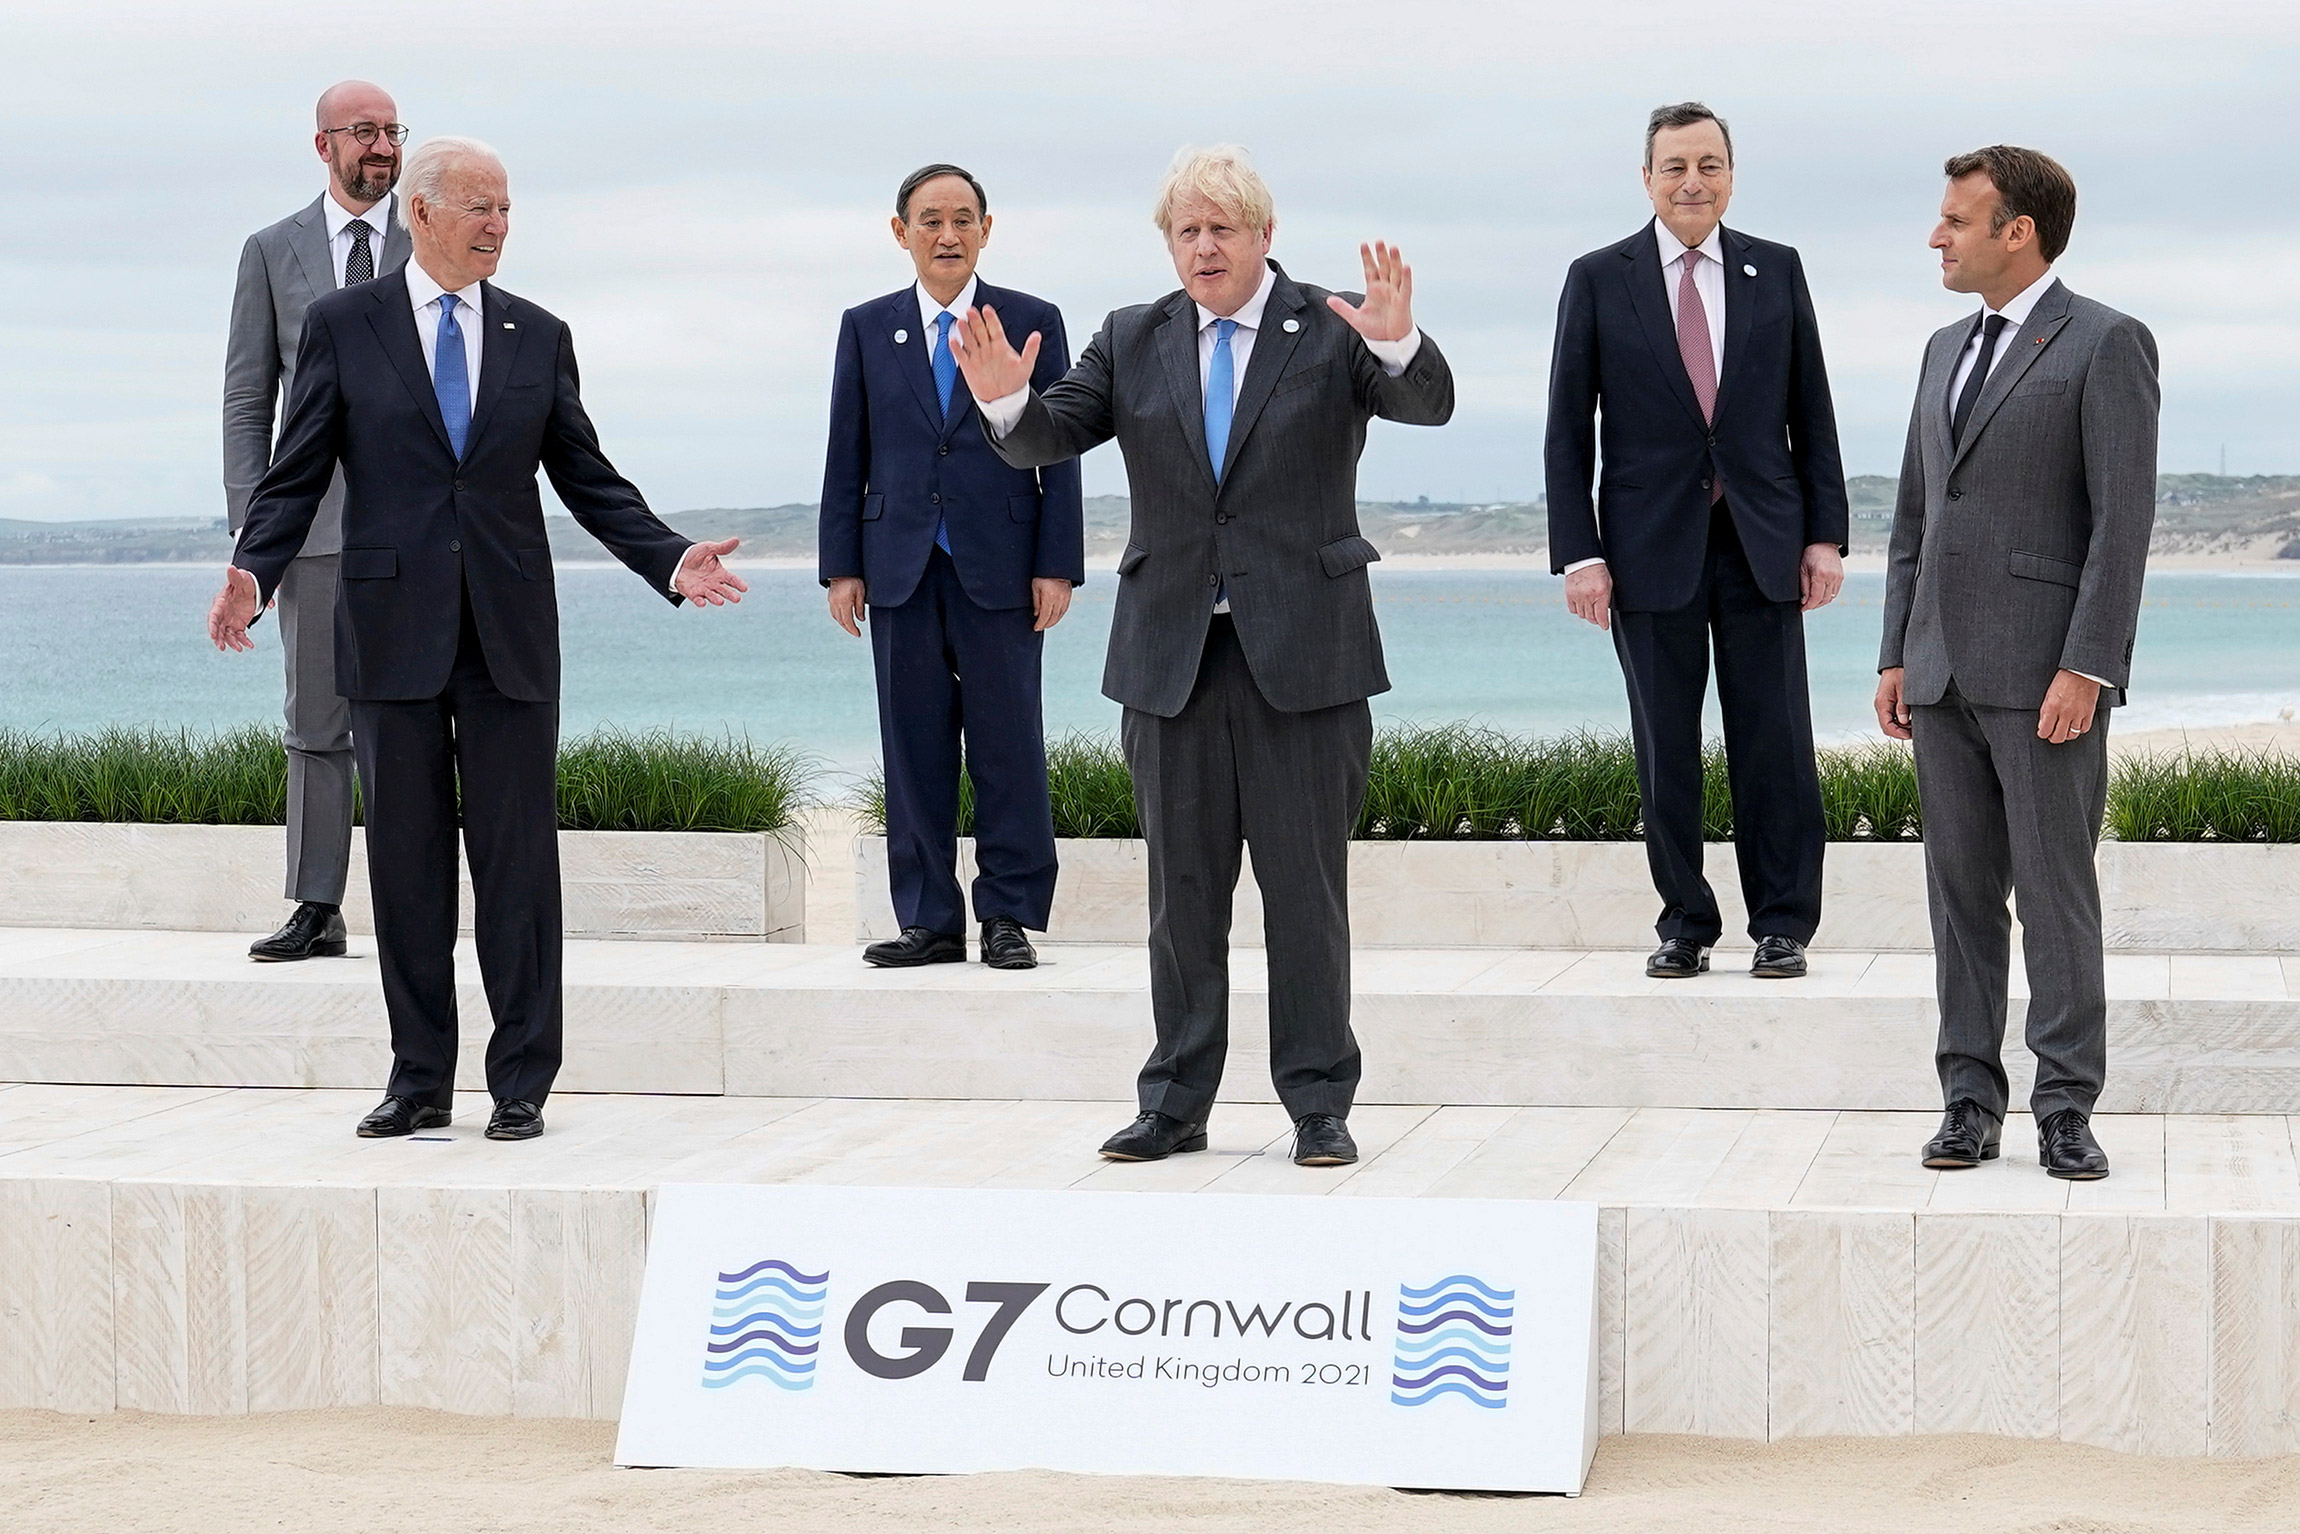 На саммите G7, прошедшем с 11 по 13 июня в Великобритании, лидеры &laquo;семерки&raquo; договорились ускорить поставки вакцины от коронавируса в бедные страны и сократить углеродные выбросы.

На фото на первом плане слева направо: Джо Байден, премьер-министр Великобритании Борис Джонсон и президент Франции Эмманюэль Макрон. На дальнем плане слева направо&nbsp;&mdash; председатель Европейского совета Шарль Мишель, премьер-министр Японии Ёсихидэ Суга, премьер-министр Италии Марио Драги